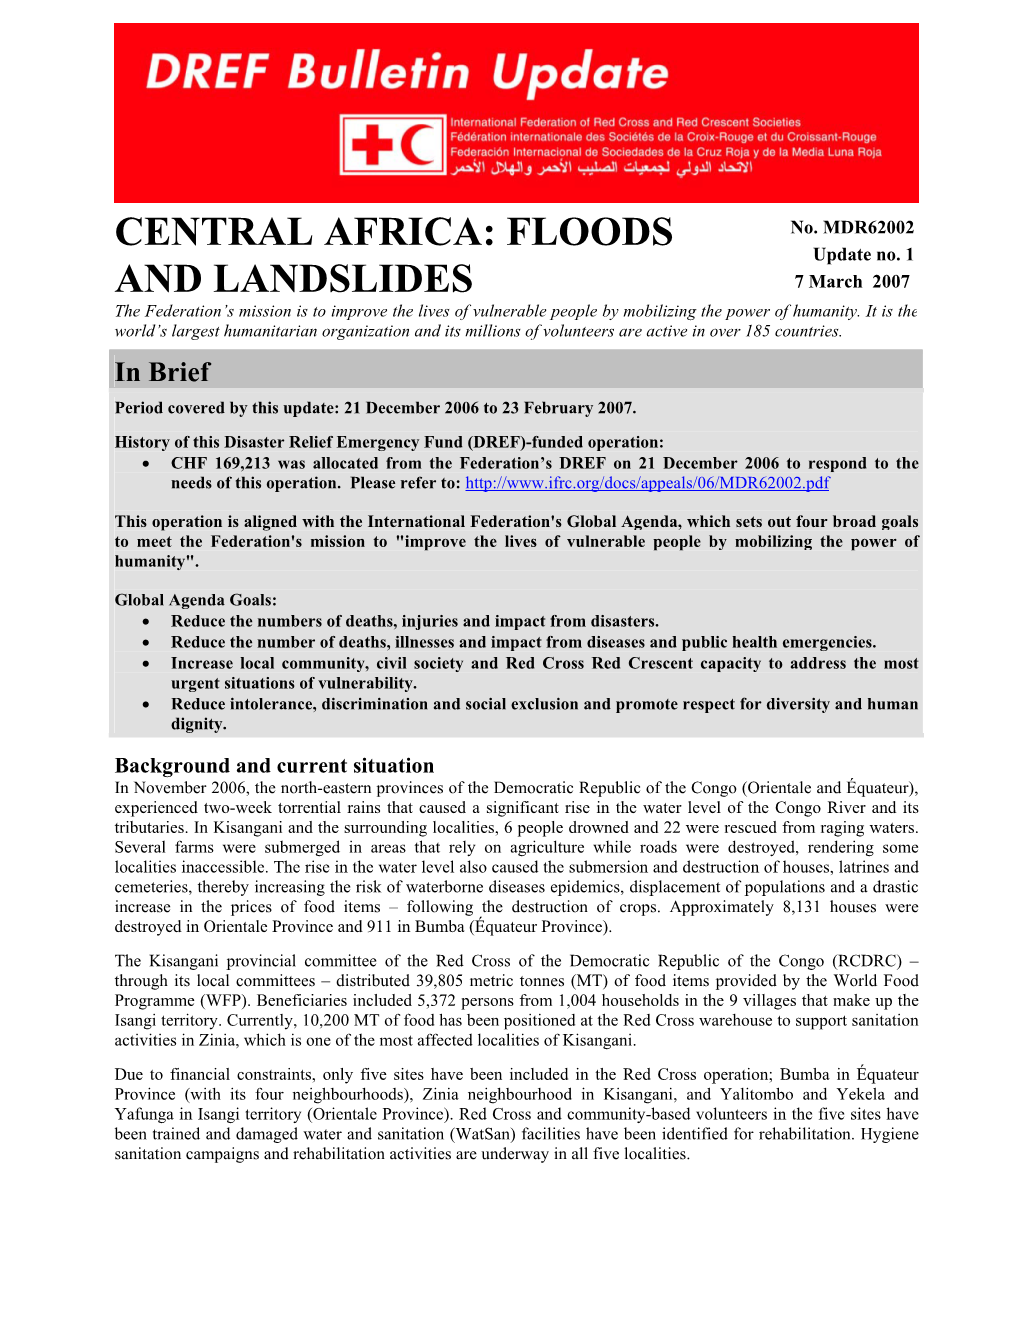 Central Africa: Floods and Landslides; DREF Bulletin No